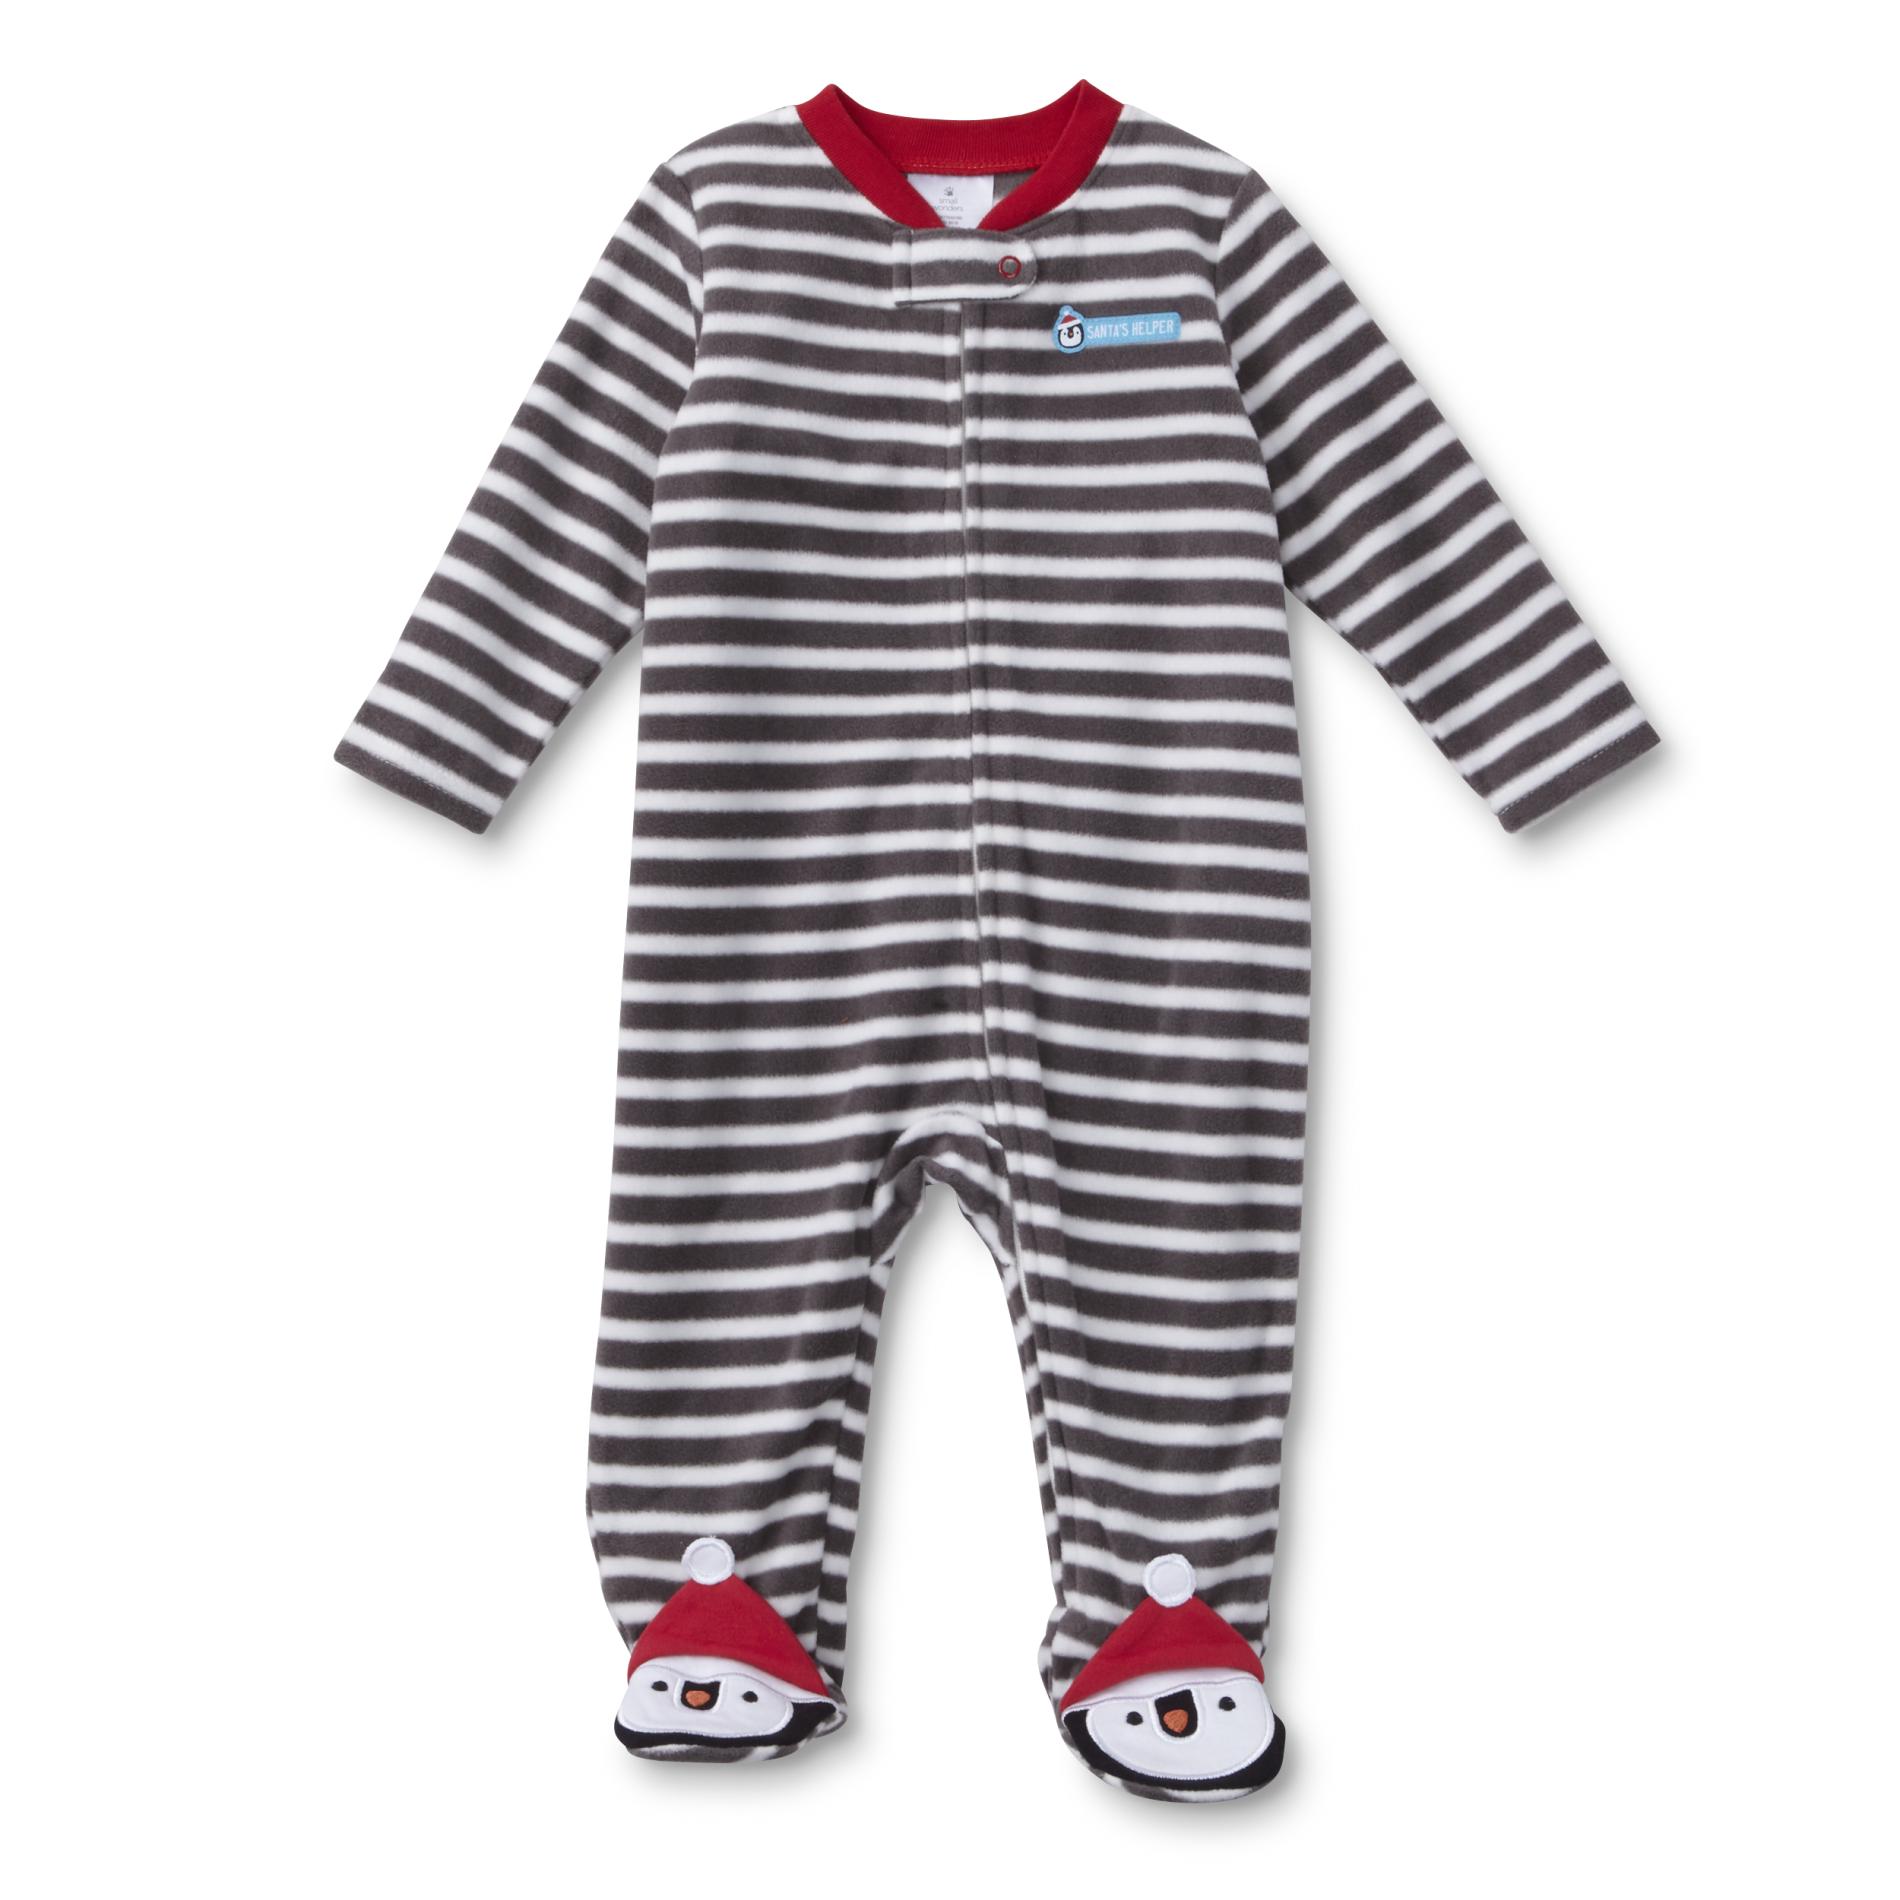 Small Wonders Newborn Boys' Christmas Fleece Sleeper Pajamas